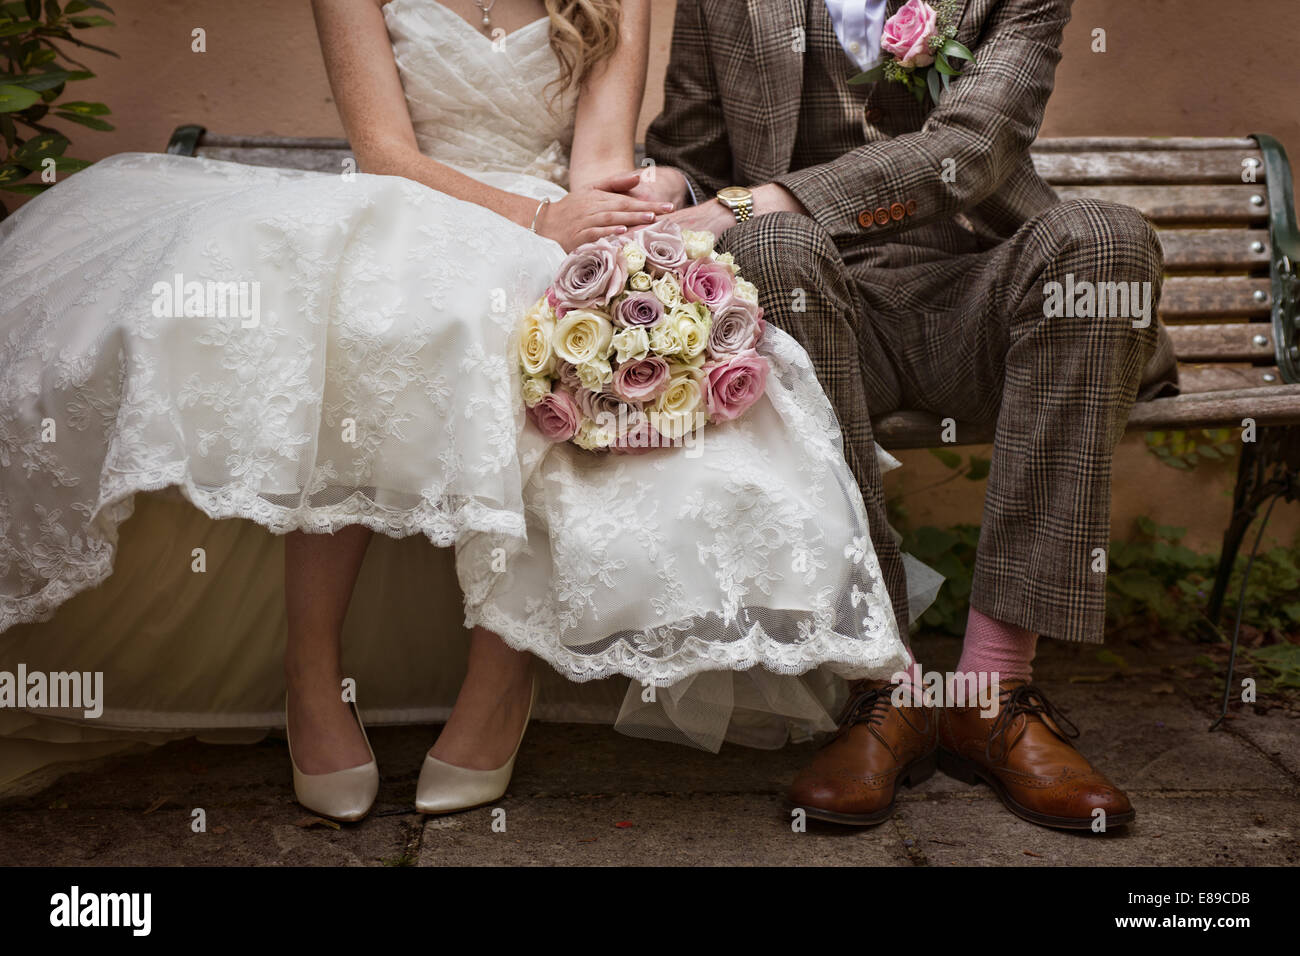 Une jeune mariée et le marié portait un costume de style vintage tweed& 50 ans de mariage,assis sur un banc, tenant la main d'un bouquet de roses Banque D'Images